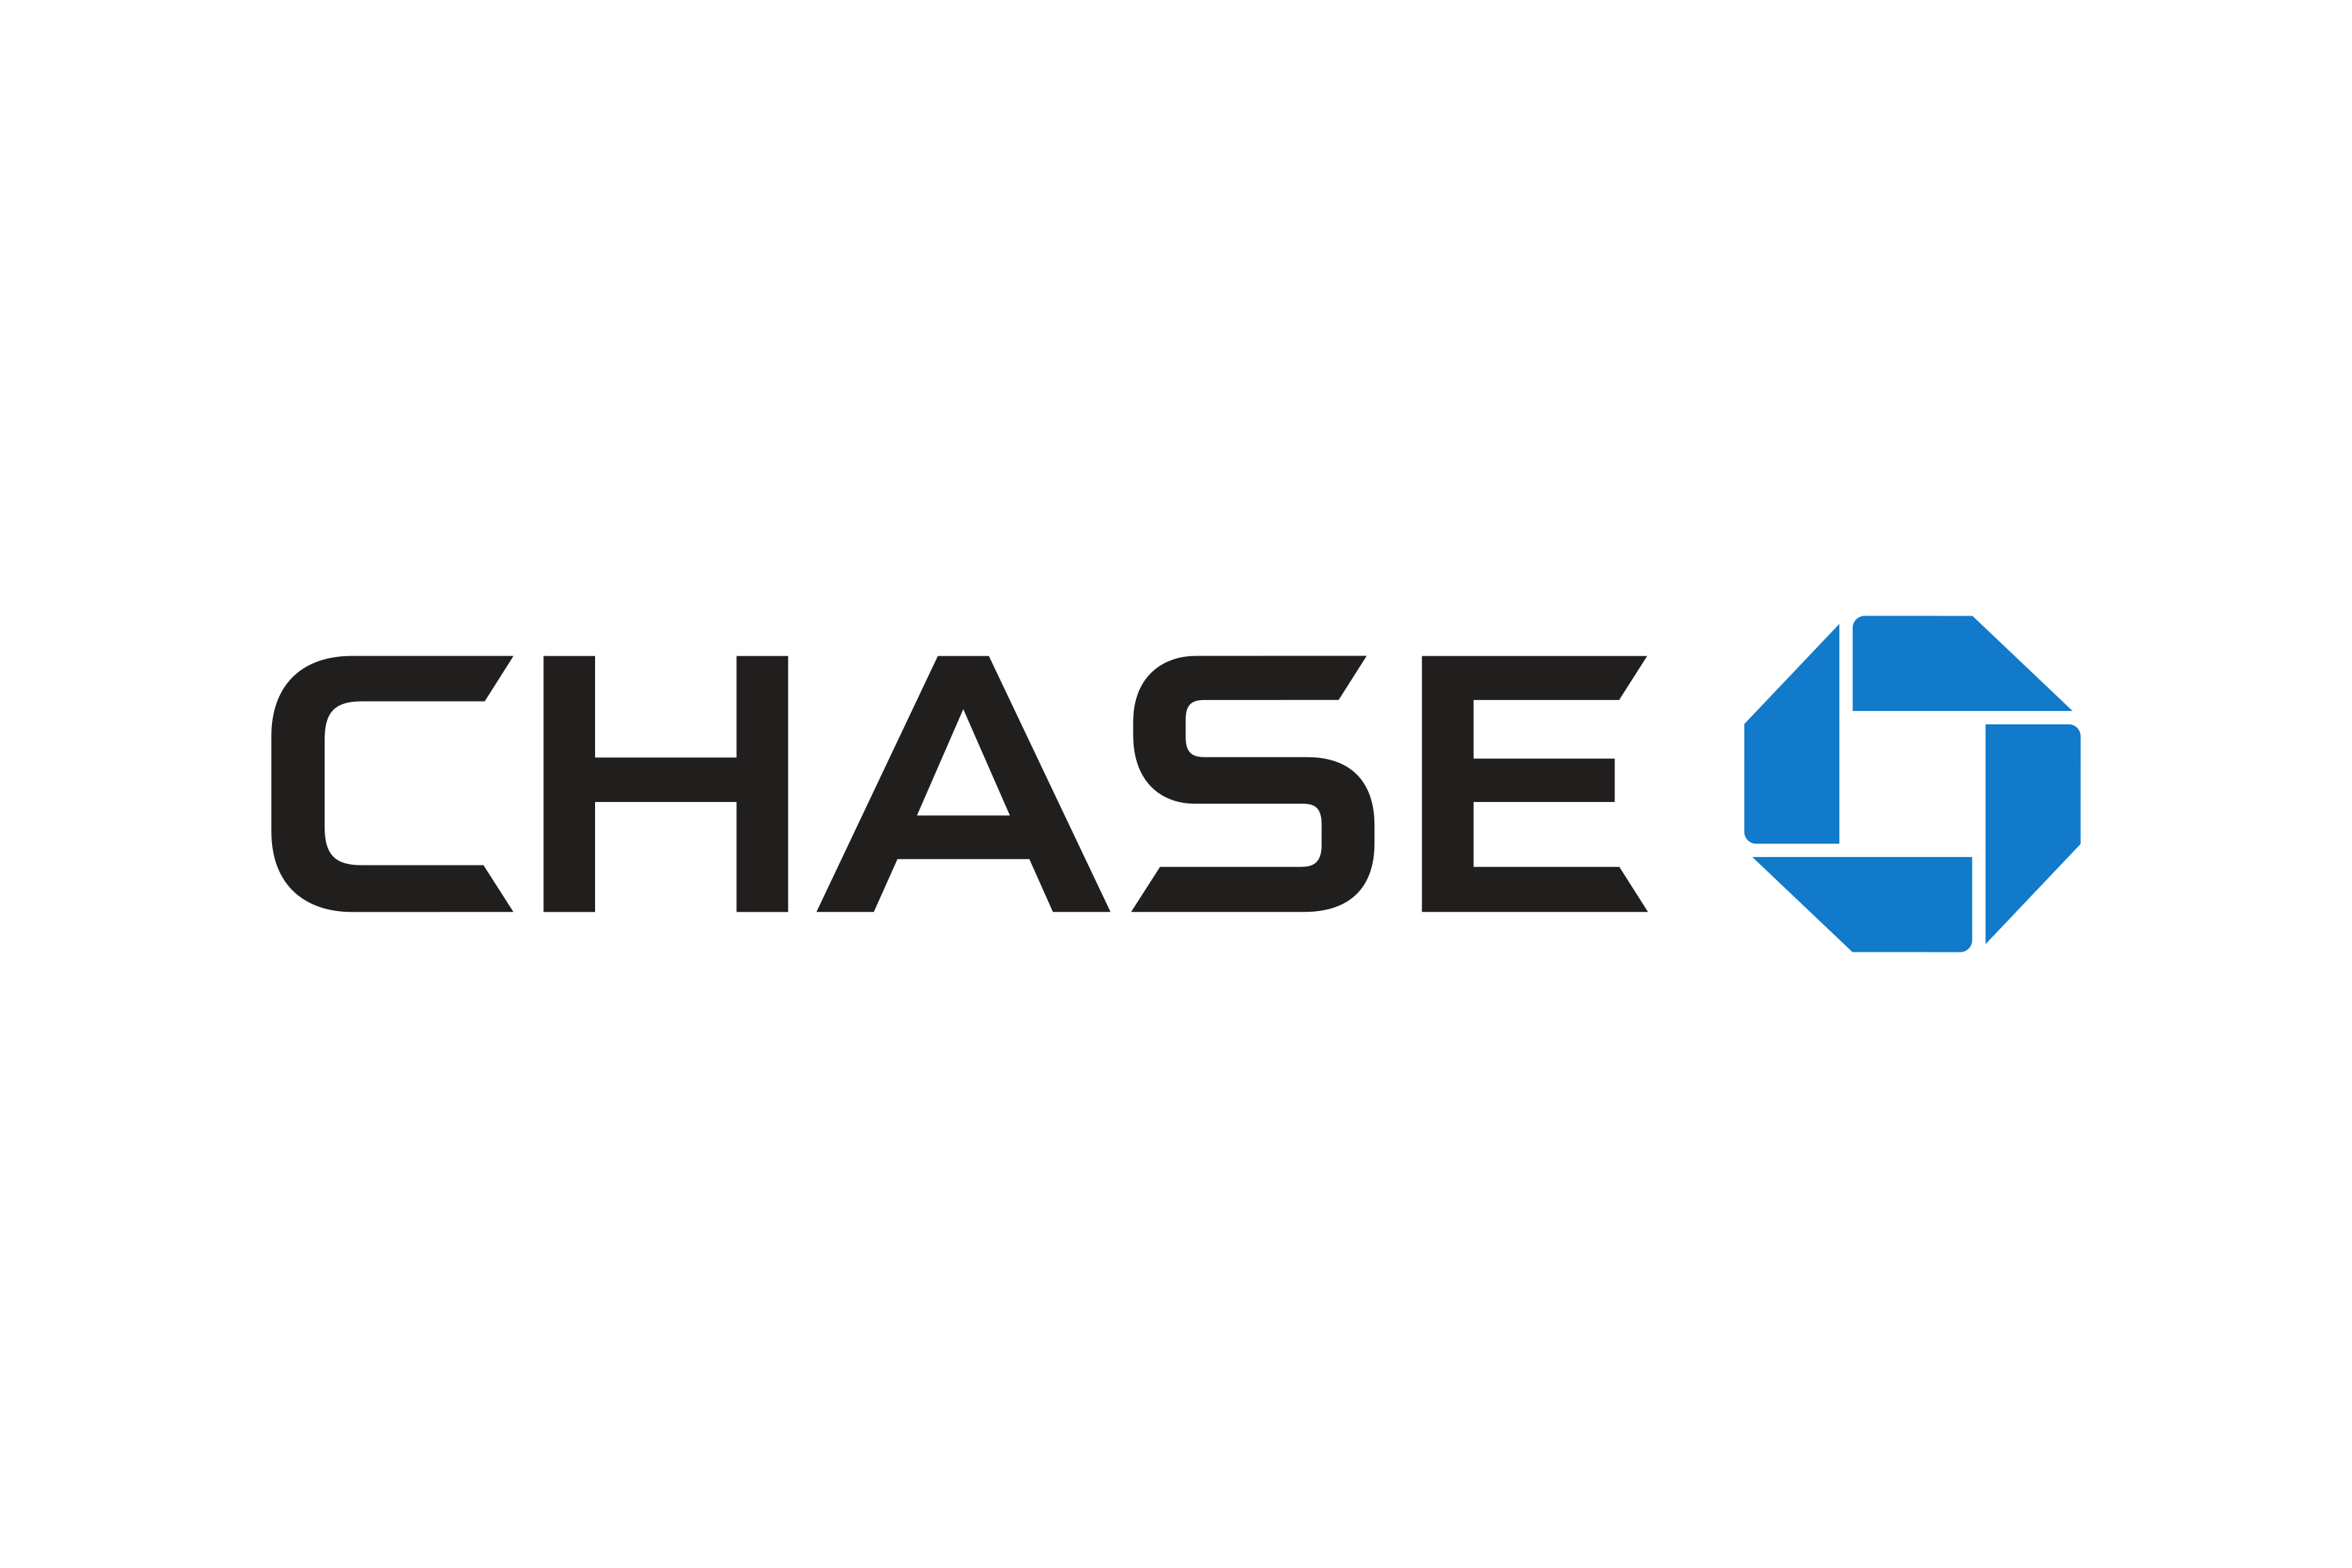 Chase painting services Painting Services Chase Bank Logo